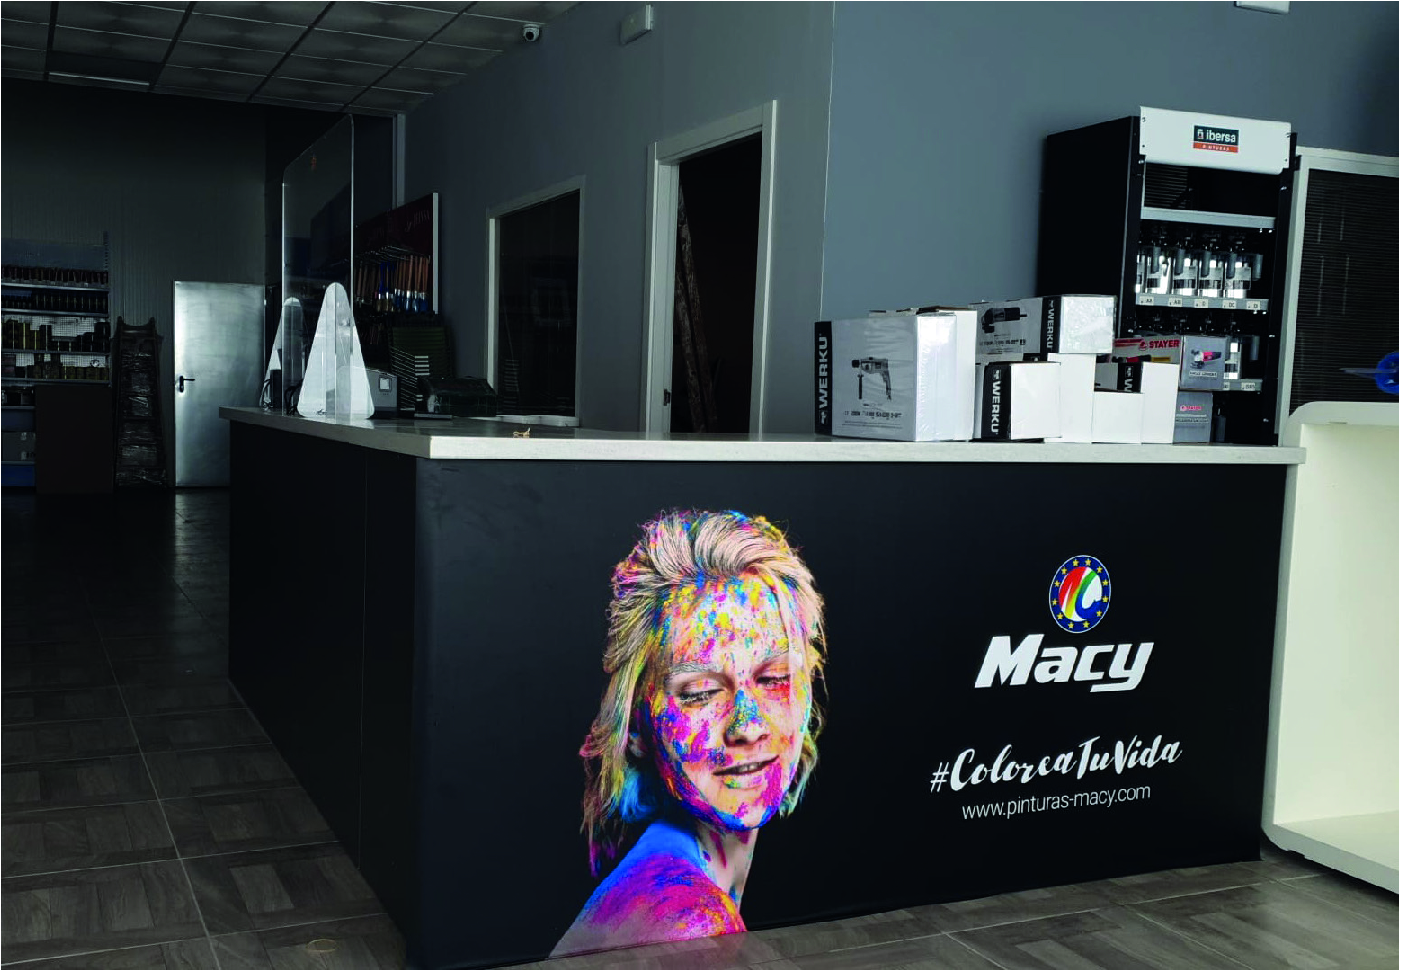 Pinturas Macy, partner de Megacolor Extremadura